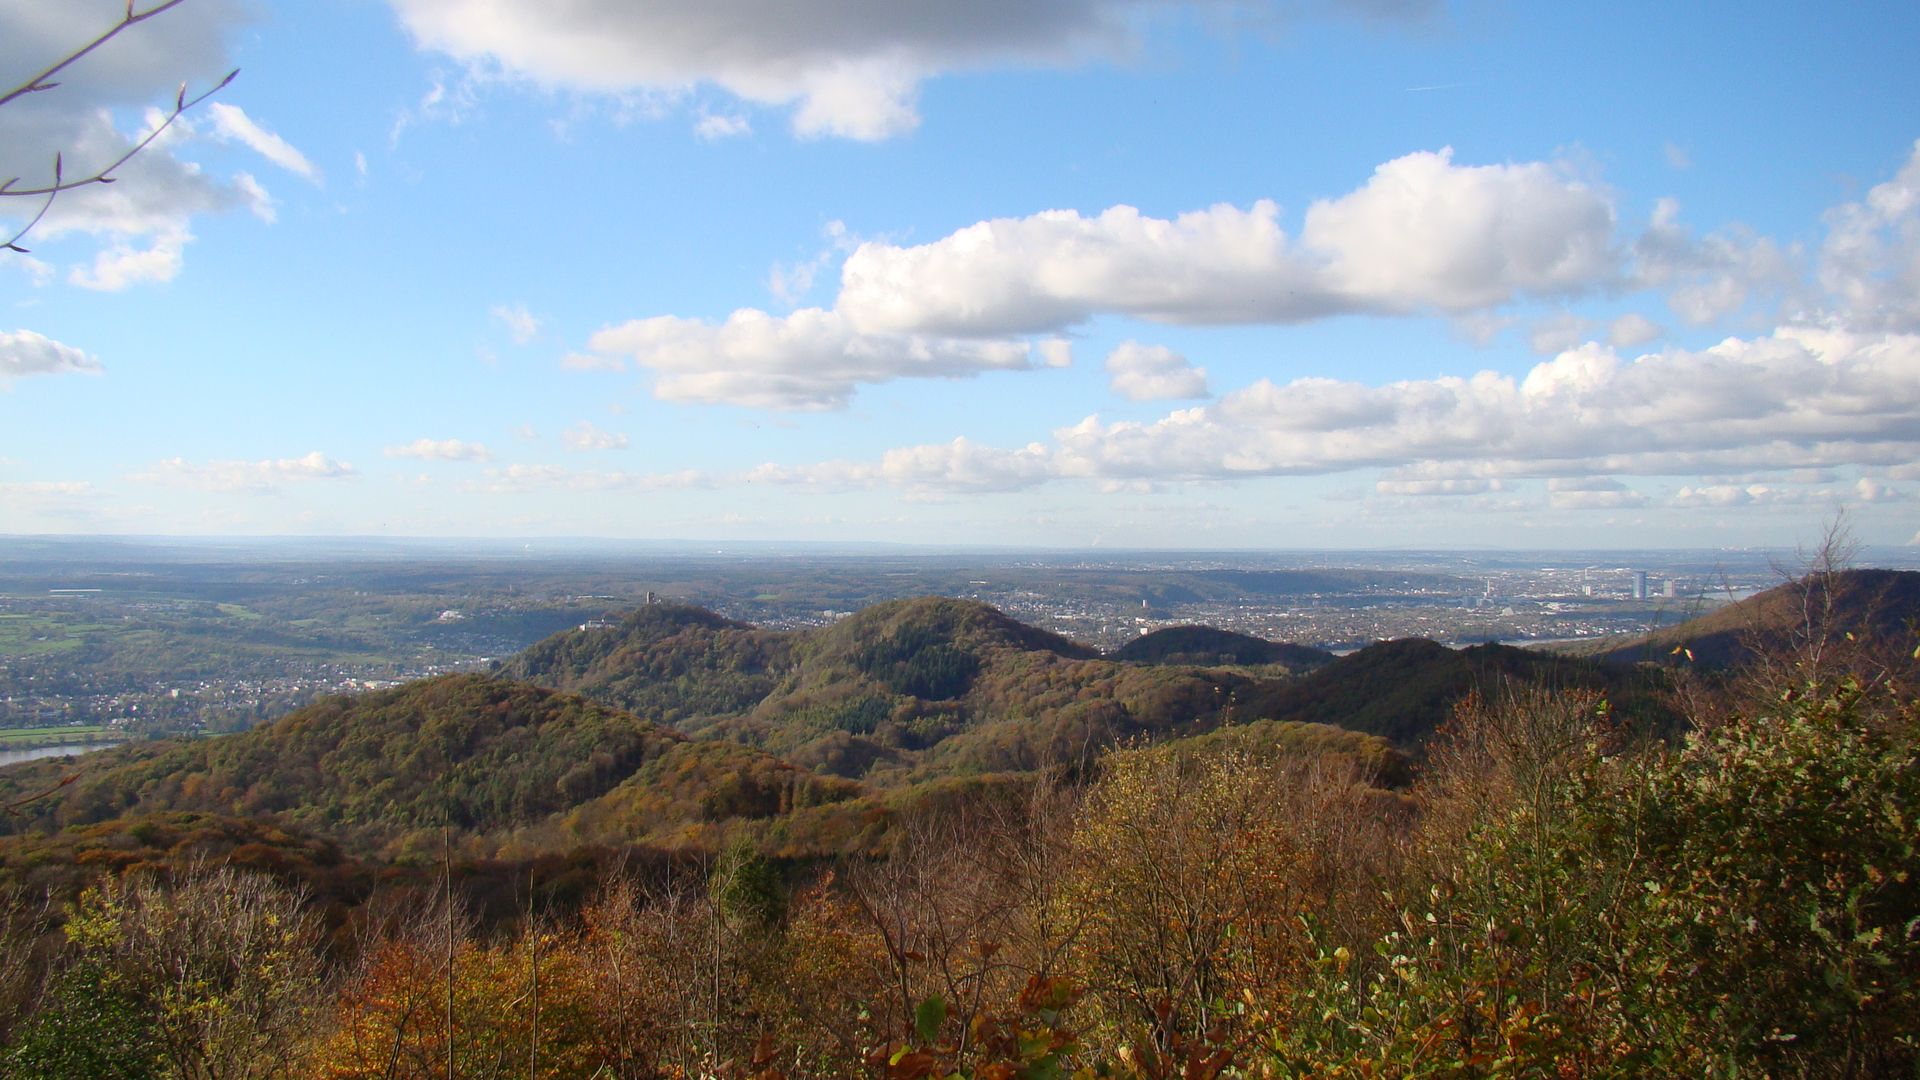 Panoramablick auf den Drachenfels und das Siebengebirge mit herbstlich gefärbten Wäldern im Vordergrund.